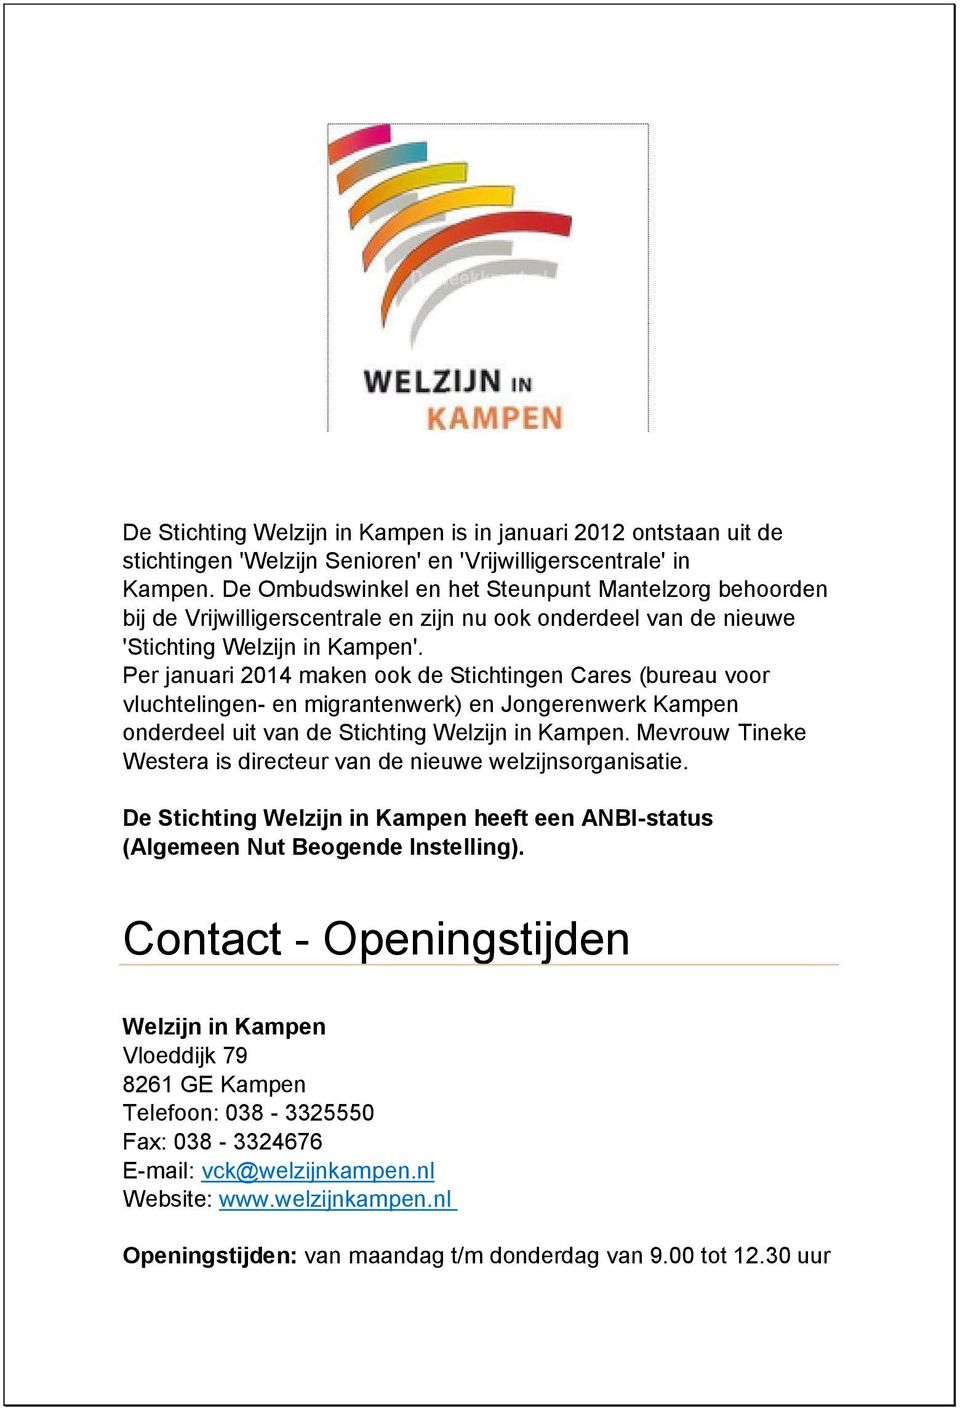 Per januari 2014 maken ook de Stichtingen Cares (bureau voor vluchtelingen- en migrantenwerk) en Jongerenwerk Kampen onderdeel uit van de Stichting Welzijn in Kampen.